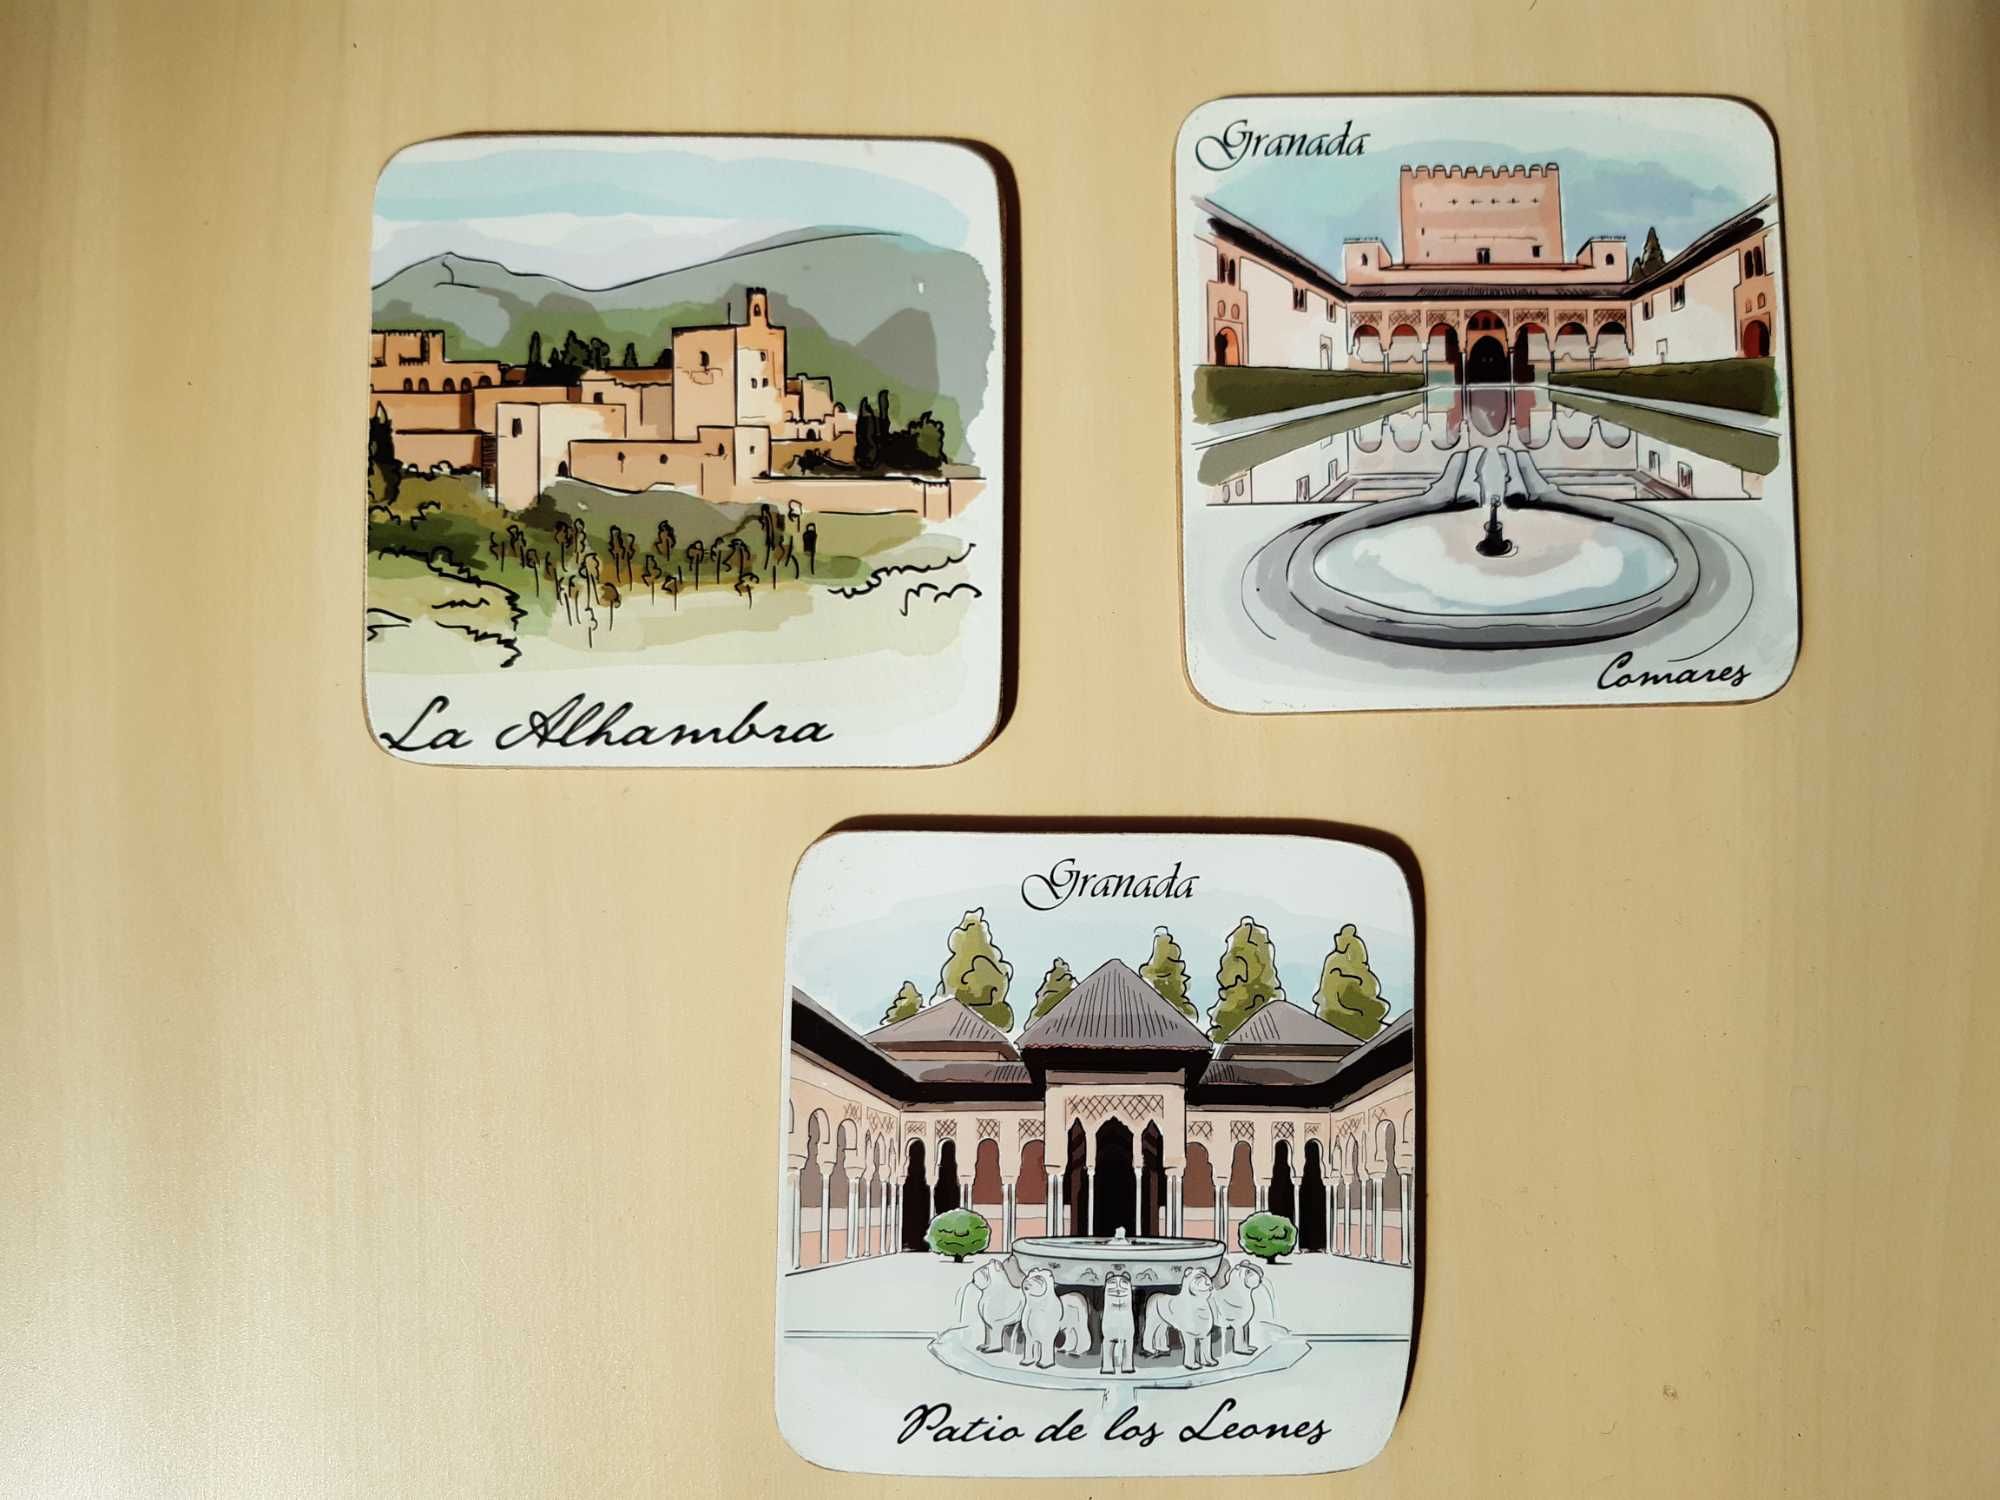 Картички и сувенири от Европа